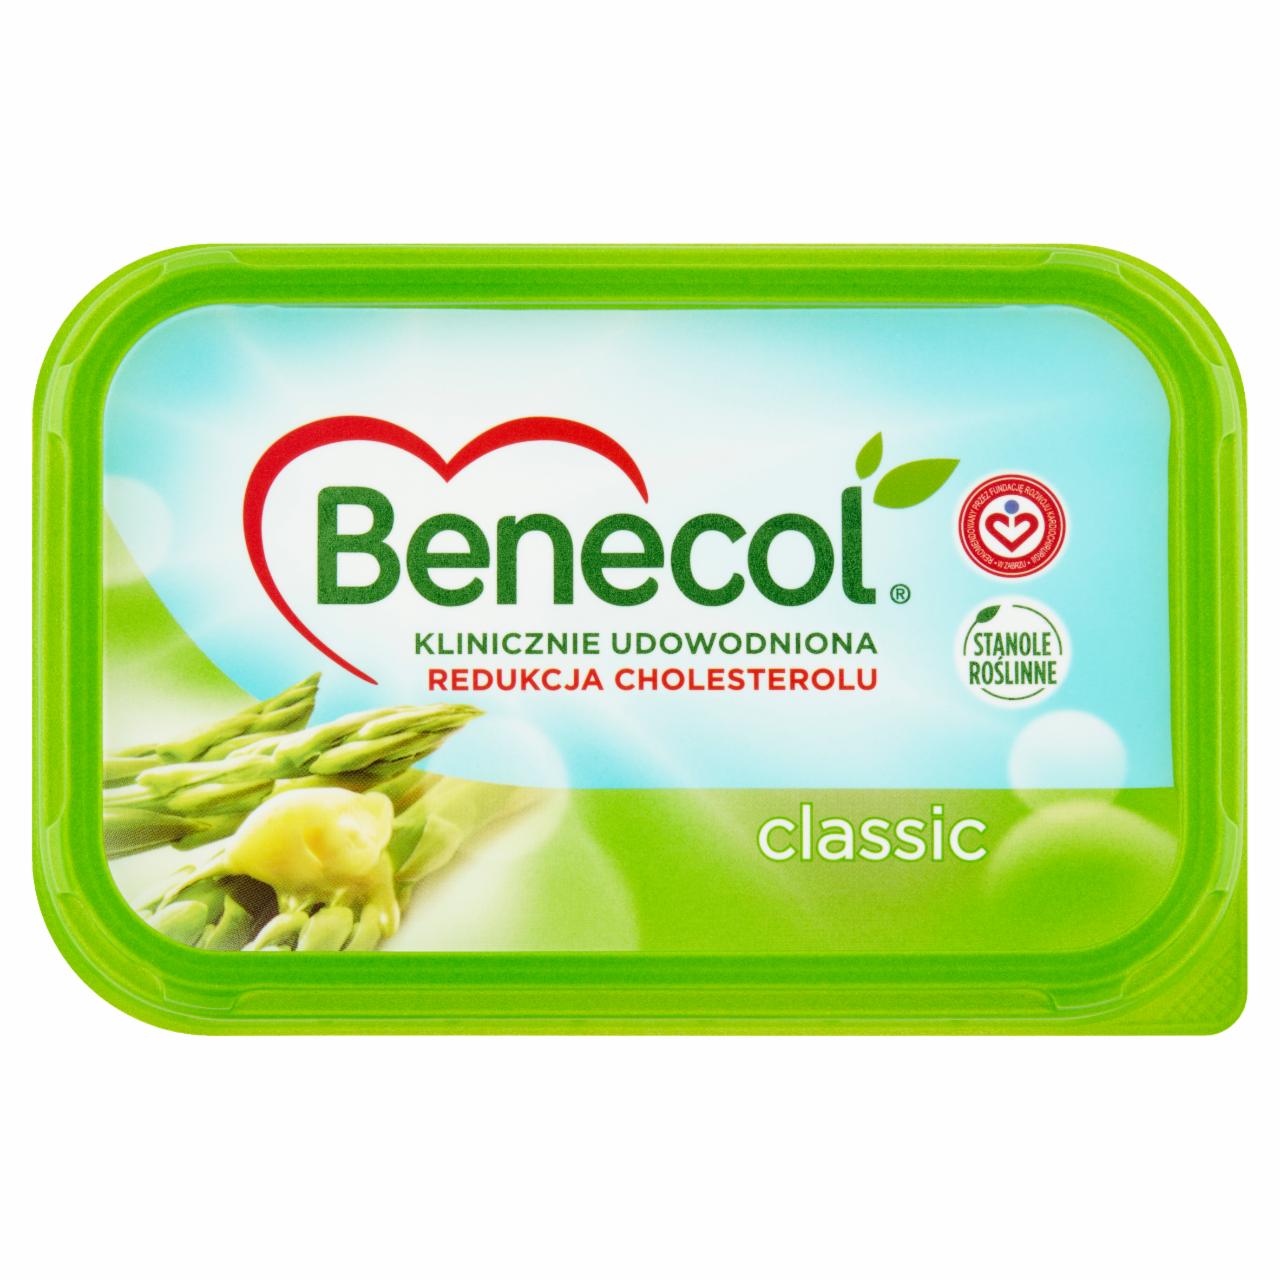 Zdjęcia - Benecol Classic Tłuszcz do smarowania z dodatkiem stanoli roślinnych 400 g